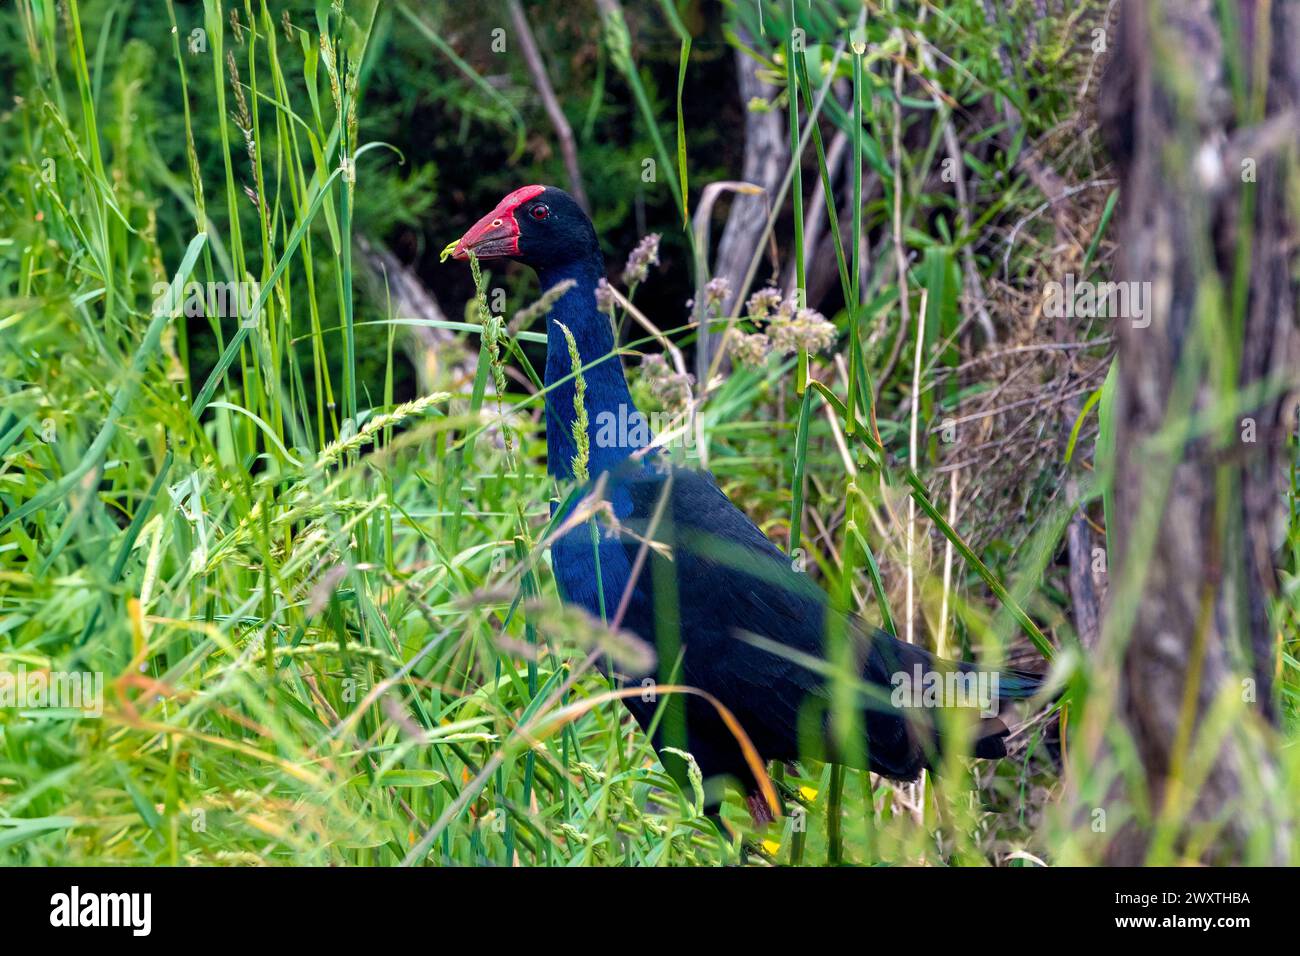 Un'gallina di palude Australasiana (Porphyrio melanotus) si trova nella riserva di Puhinui nel sud di Auckland, nuova Zelanda. Il blu e il nero dell'acqua Foto Stock